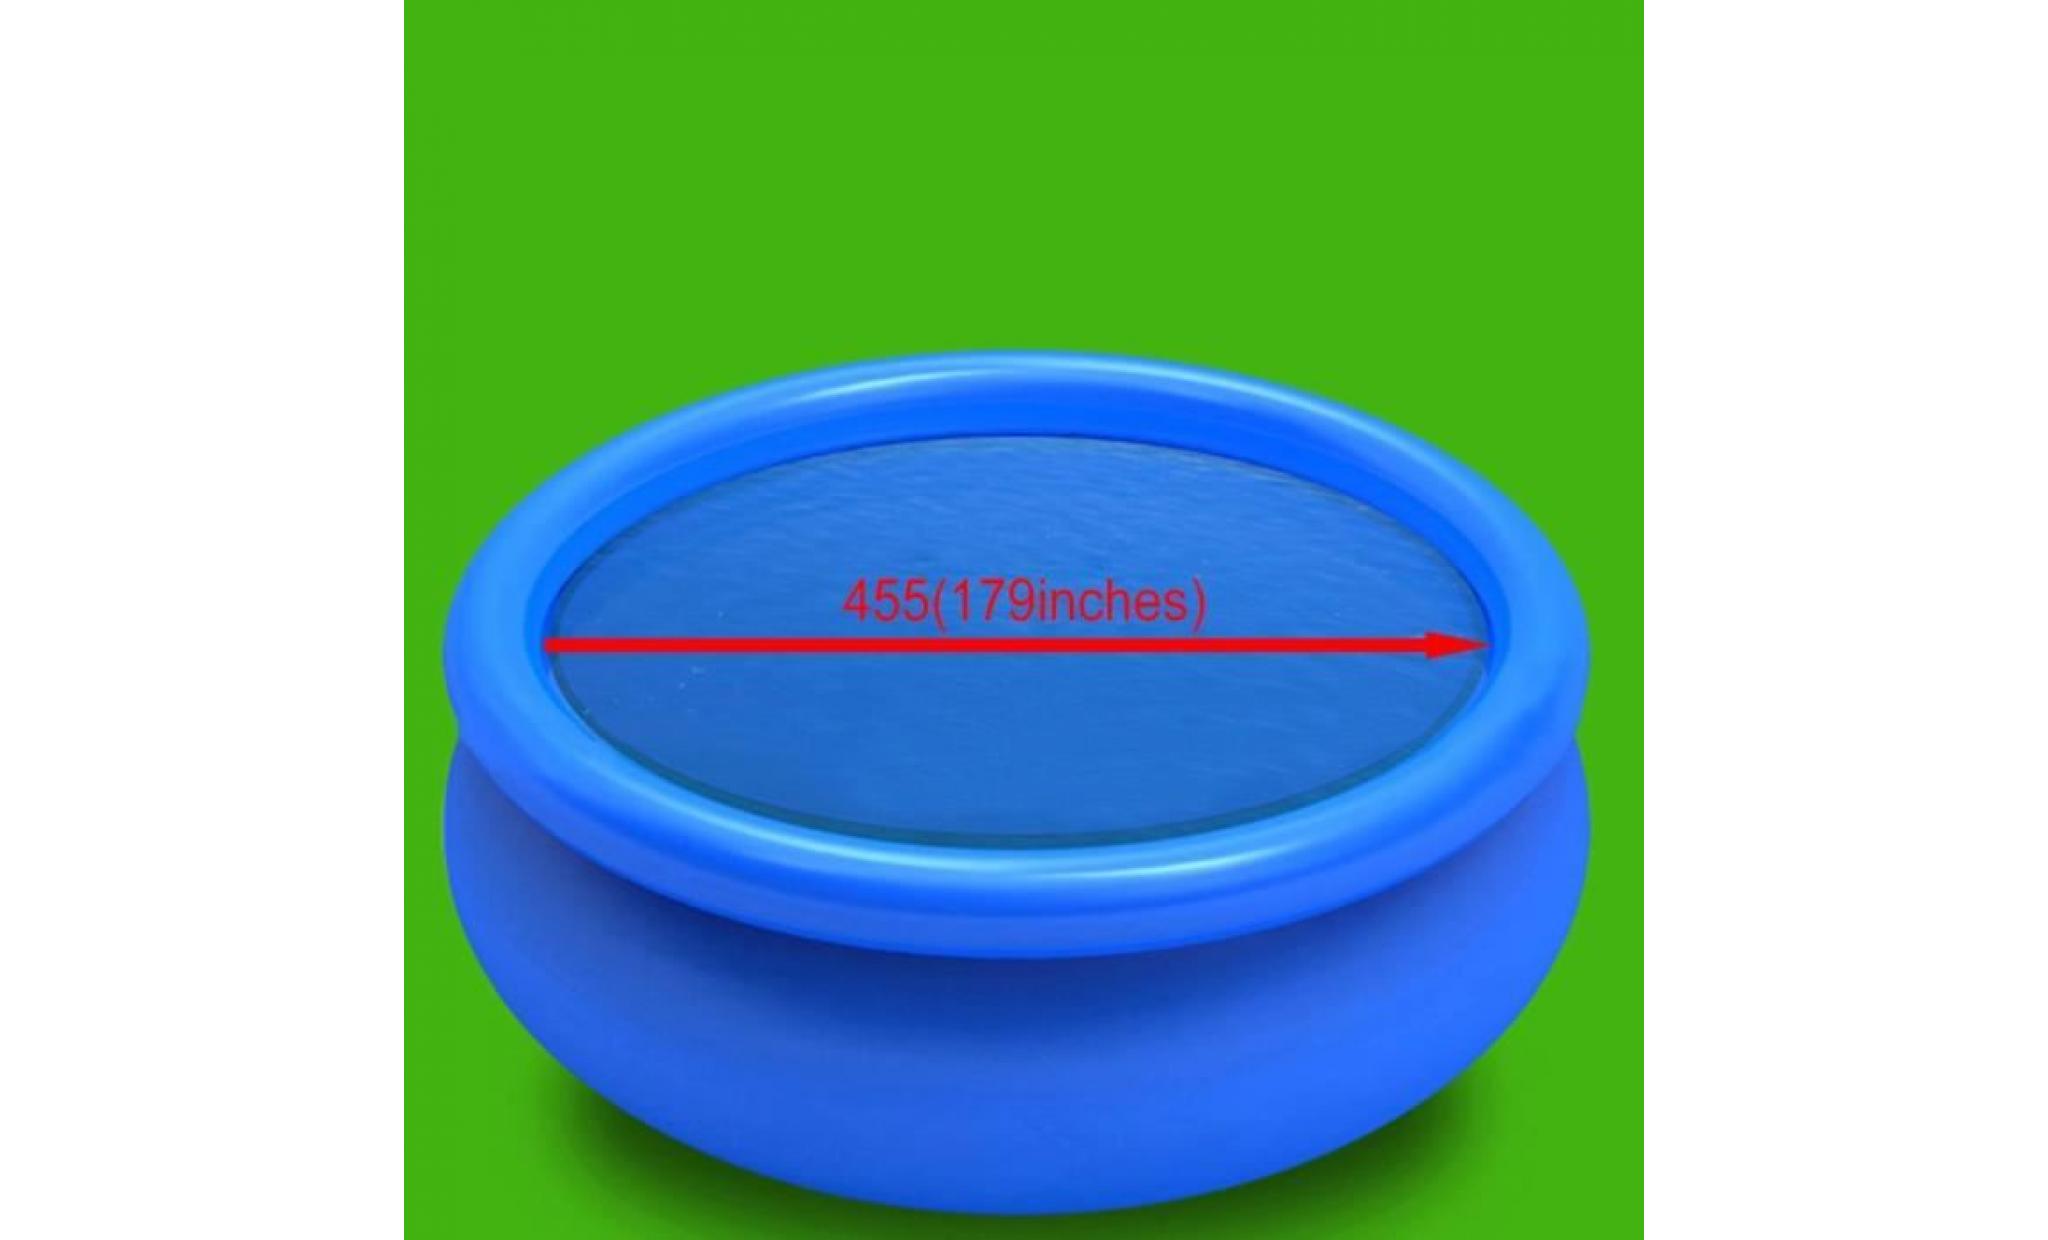 film solaire de piscine ronde pe 455 cm bleu pas cher